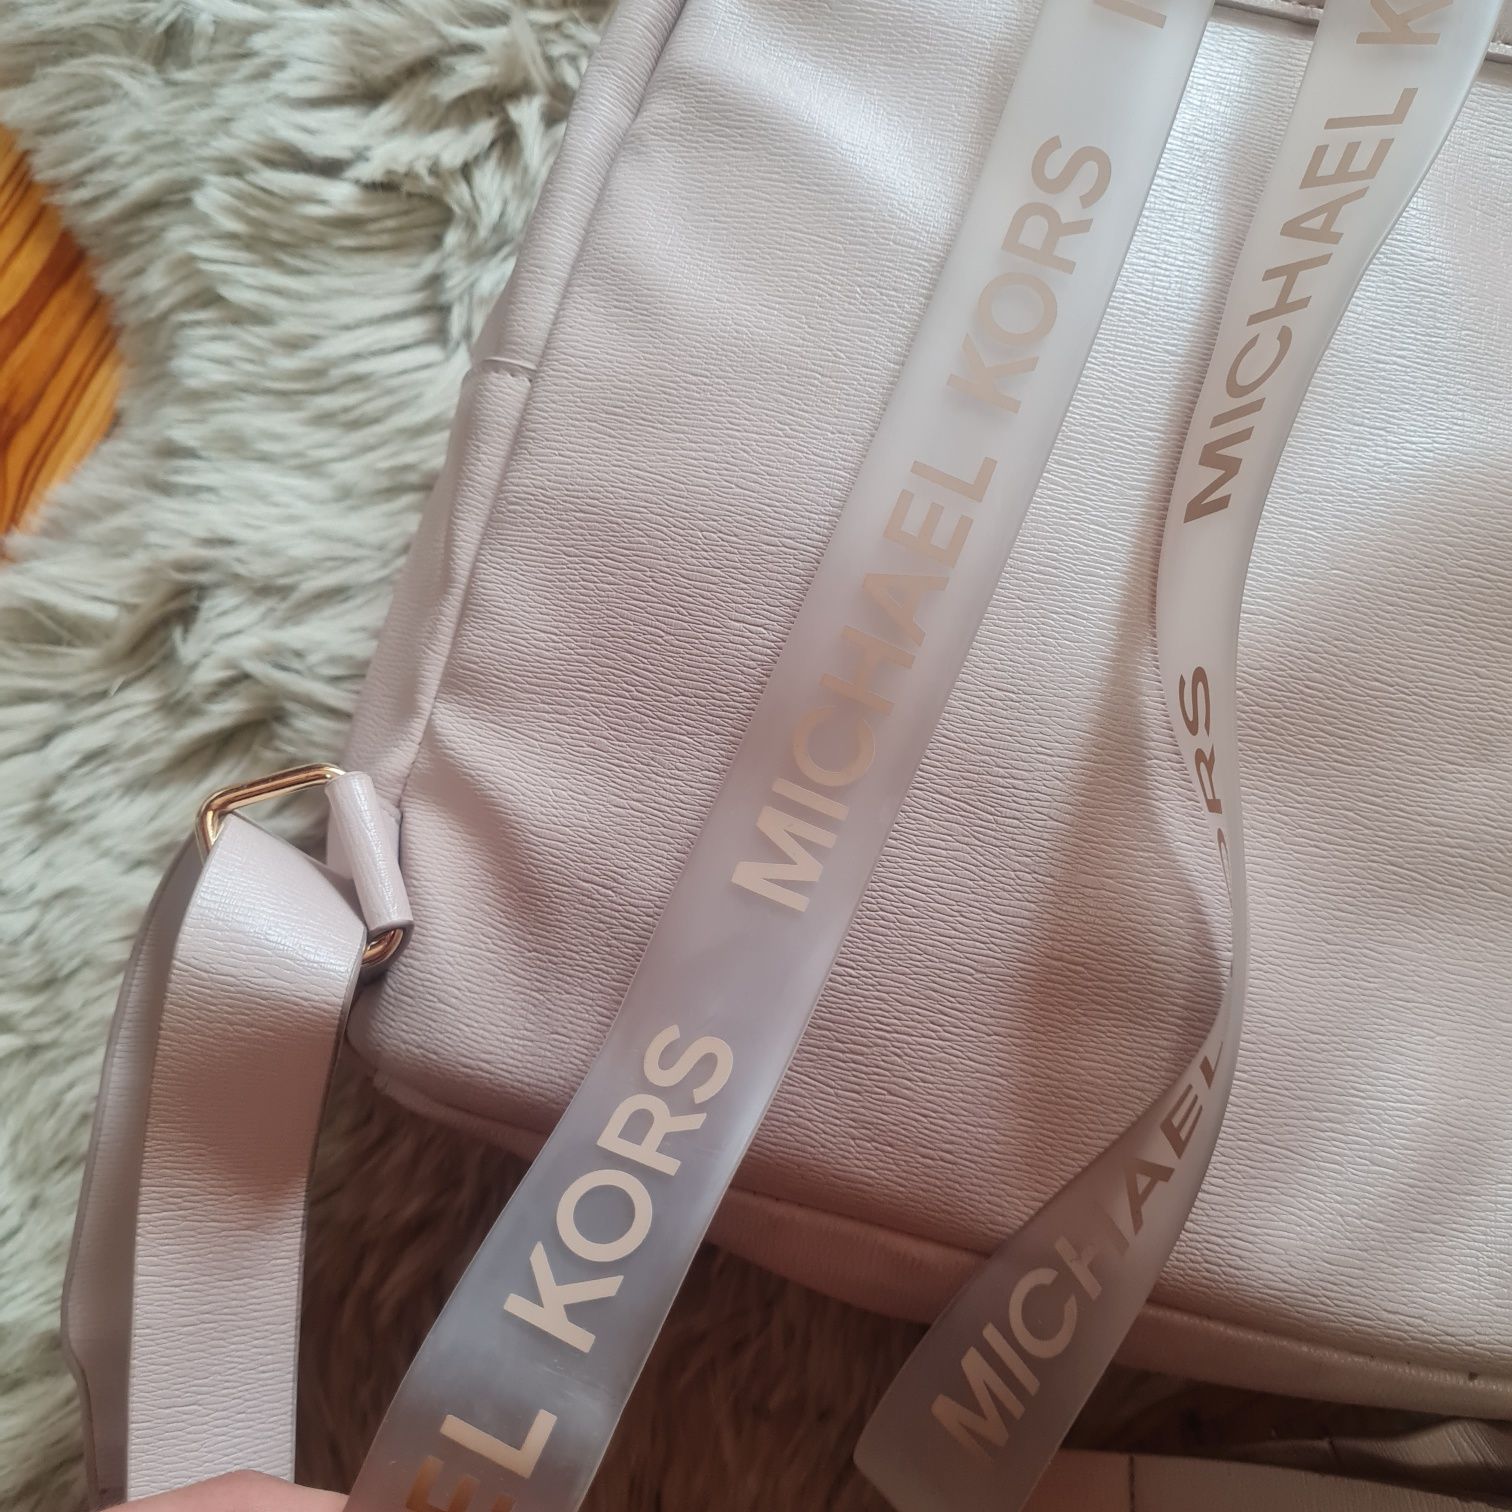 Michael Kors plecaczek mały backpack różowy z napisami na ramionach i